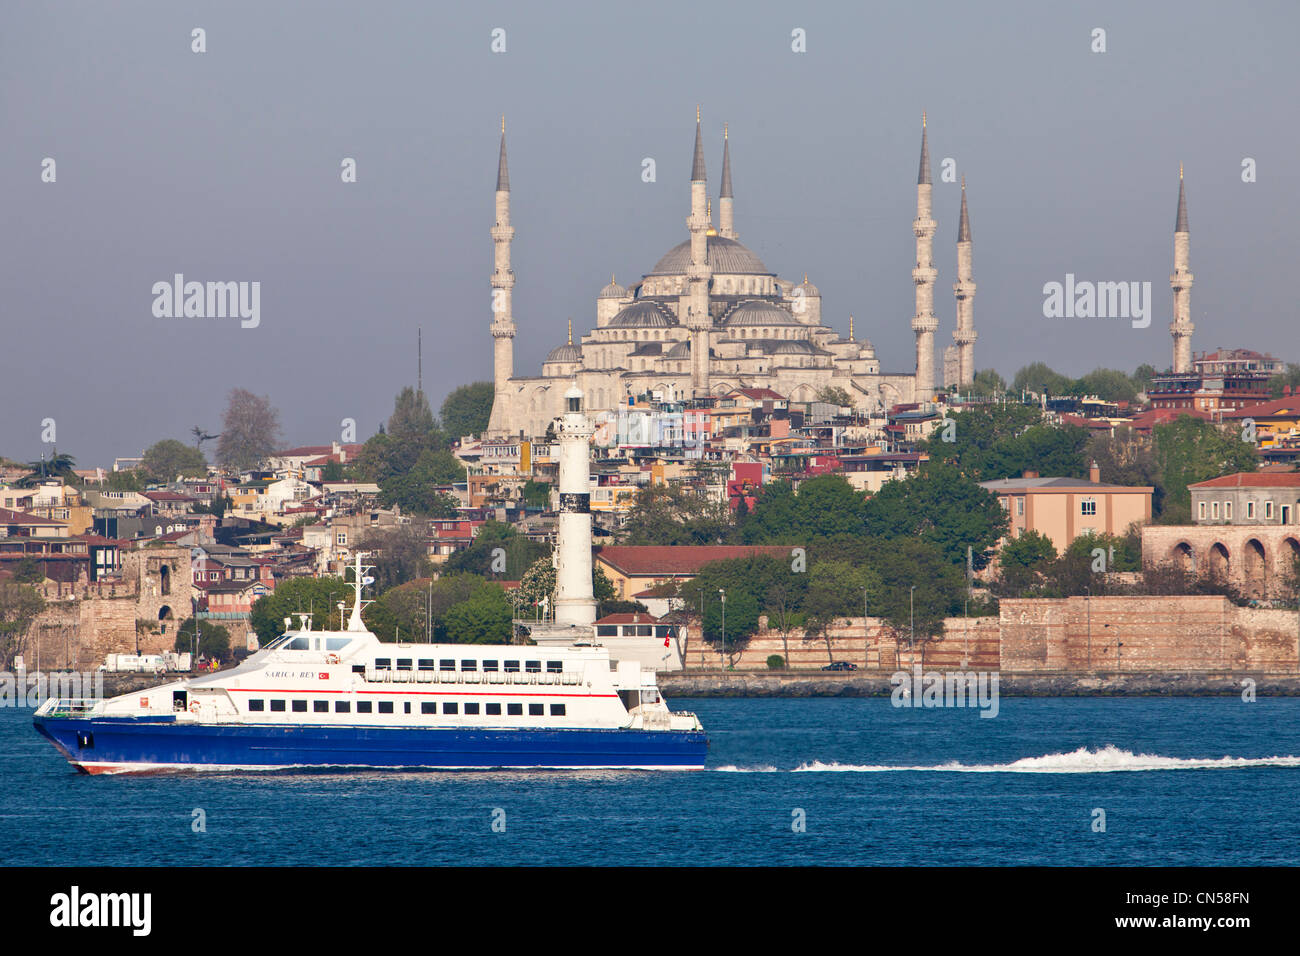 Türkei, Istanbul, eine Fähre über den Bosporus und die Sultanahmet-Moschee mit dem Sultan Ahmet Camii (blaue Moschee) Stockfoto